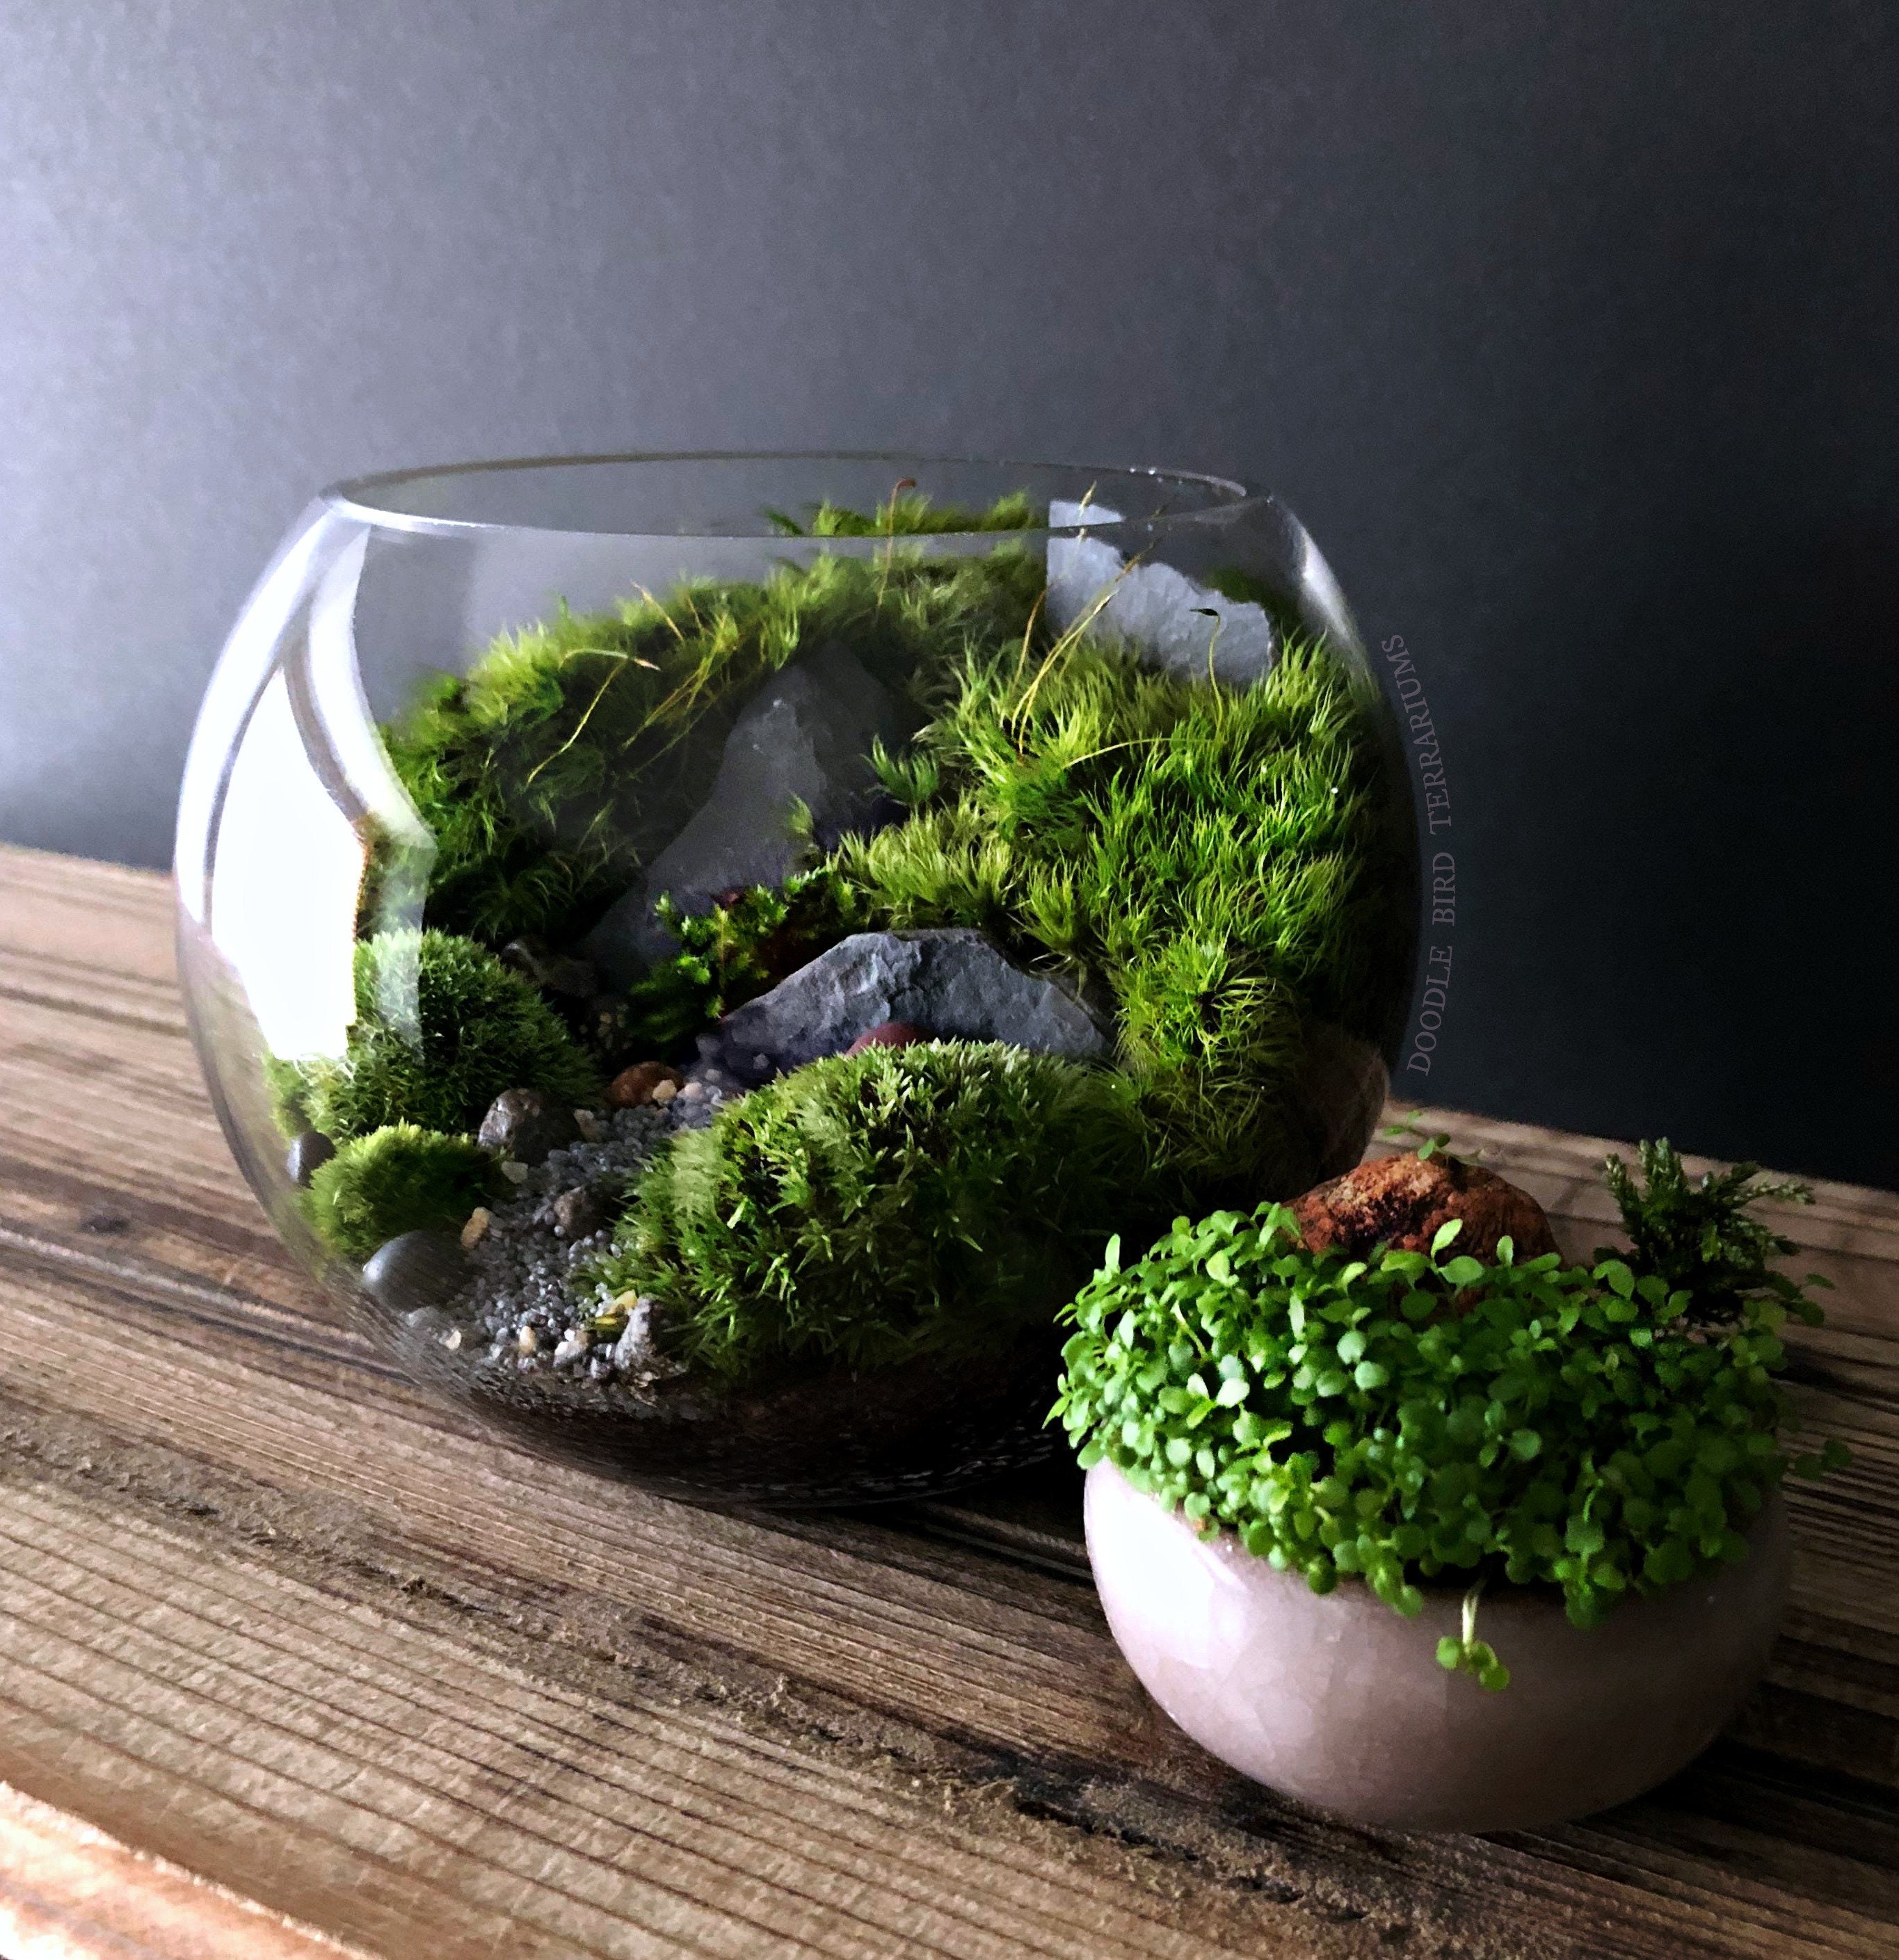 Moss Terrarium Garden in Glass Bowl Lid